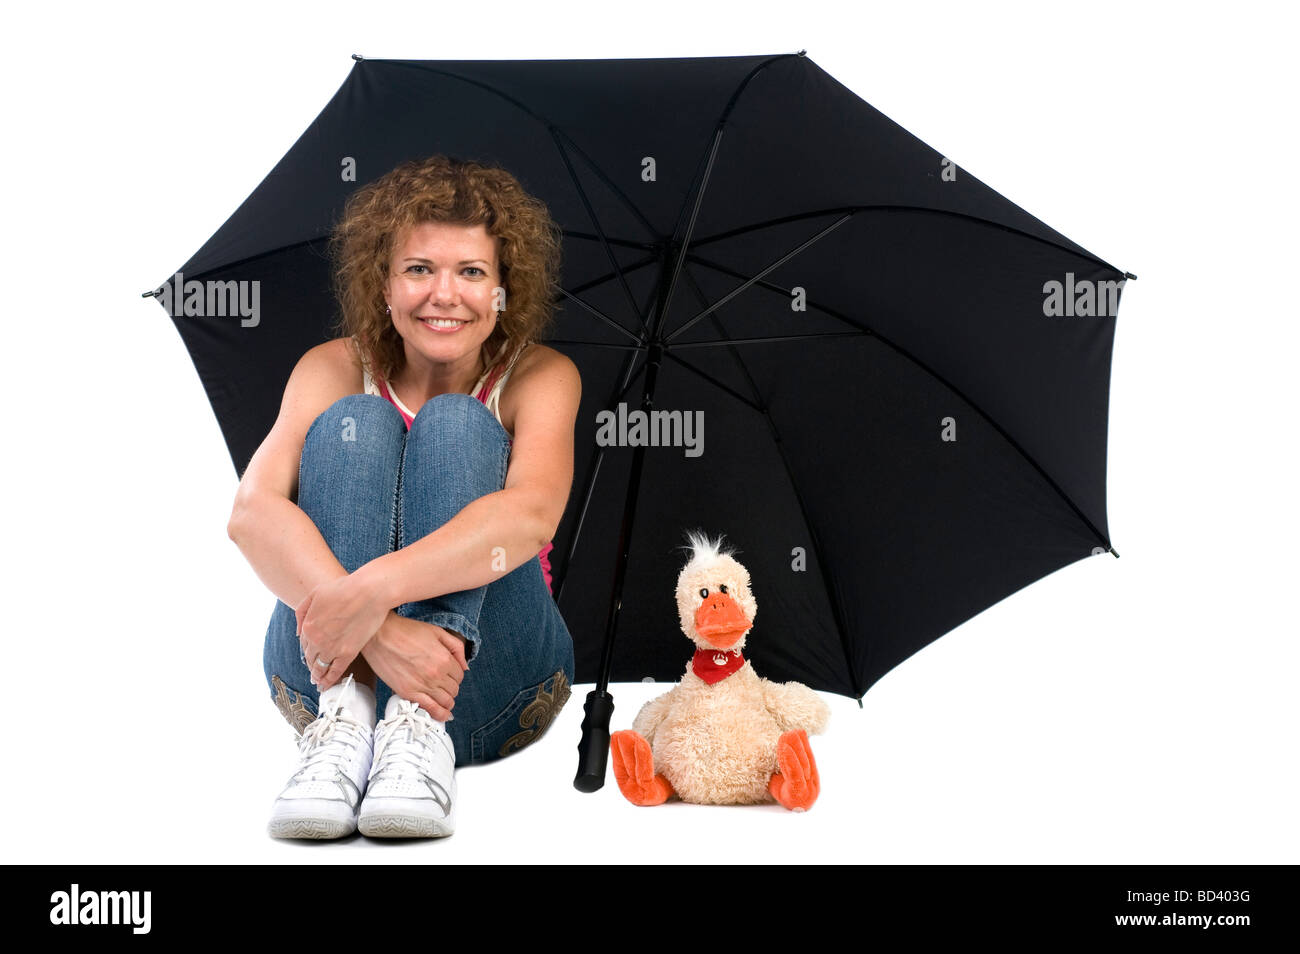 Objet sur sports blanc femme avec parapluie Banque D'Images